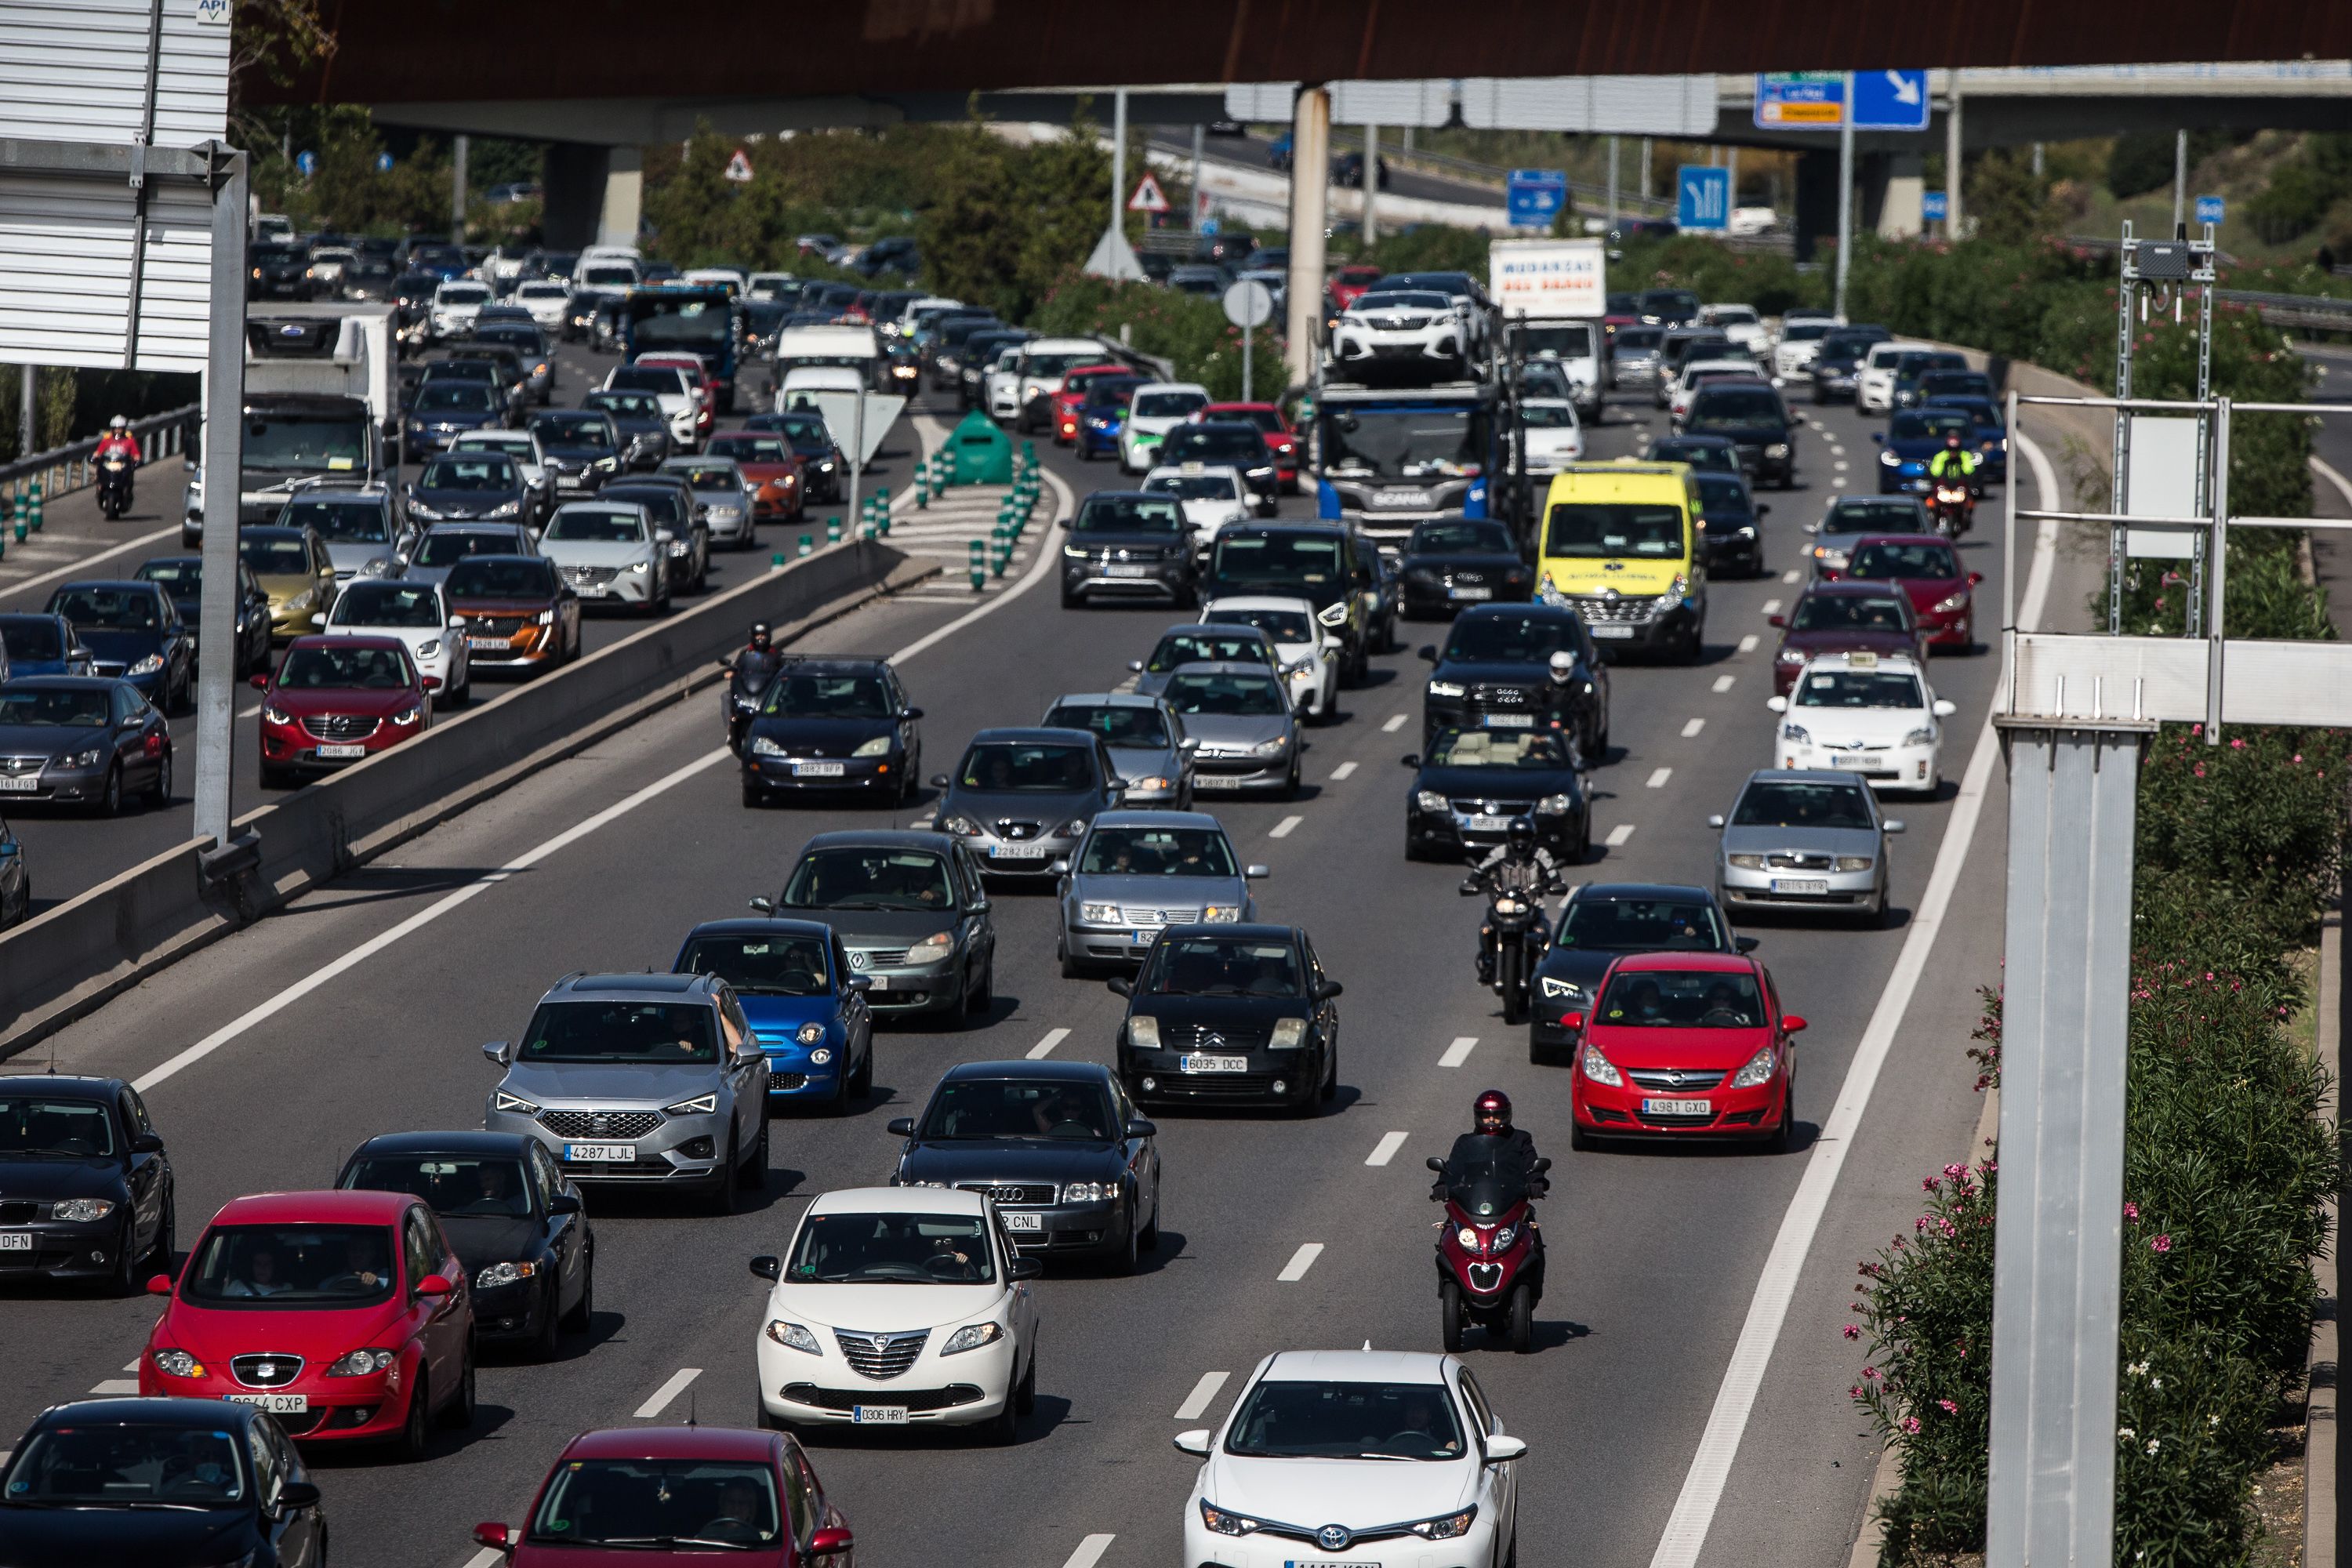 No respetar la distancia de seguridad entre los coches te puede costar una multa de 500 euros (Foto: Europa Press)